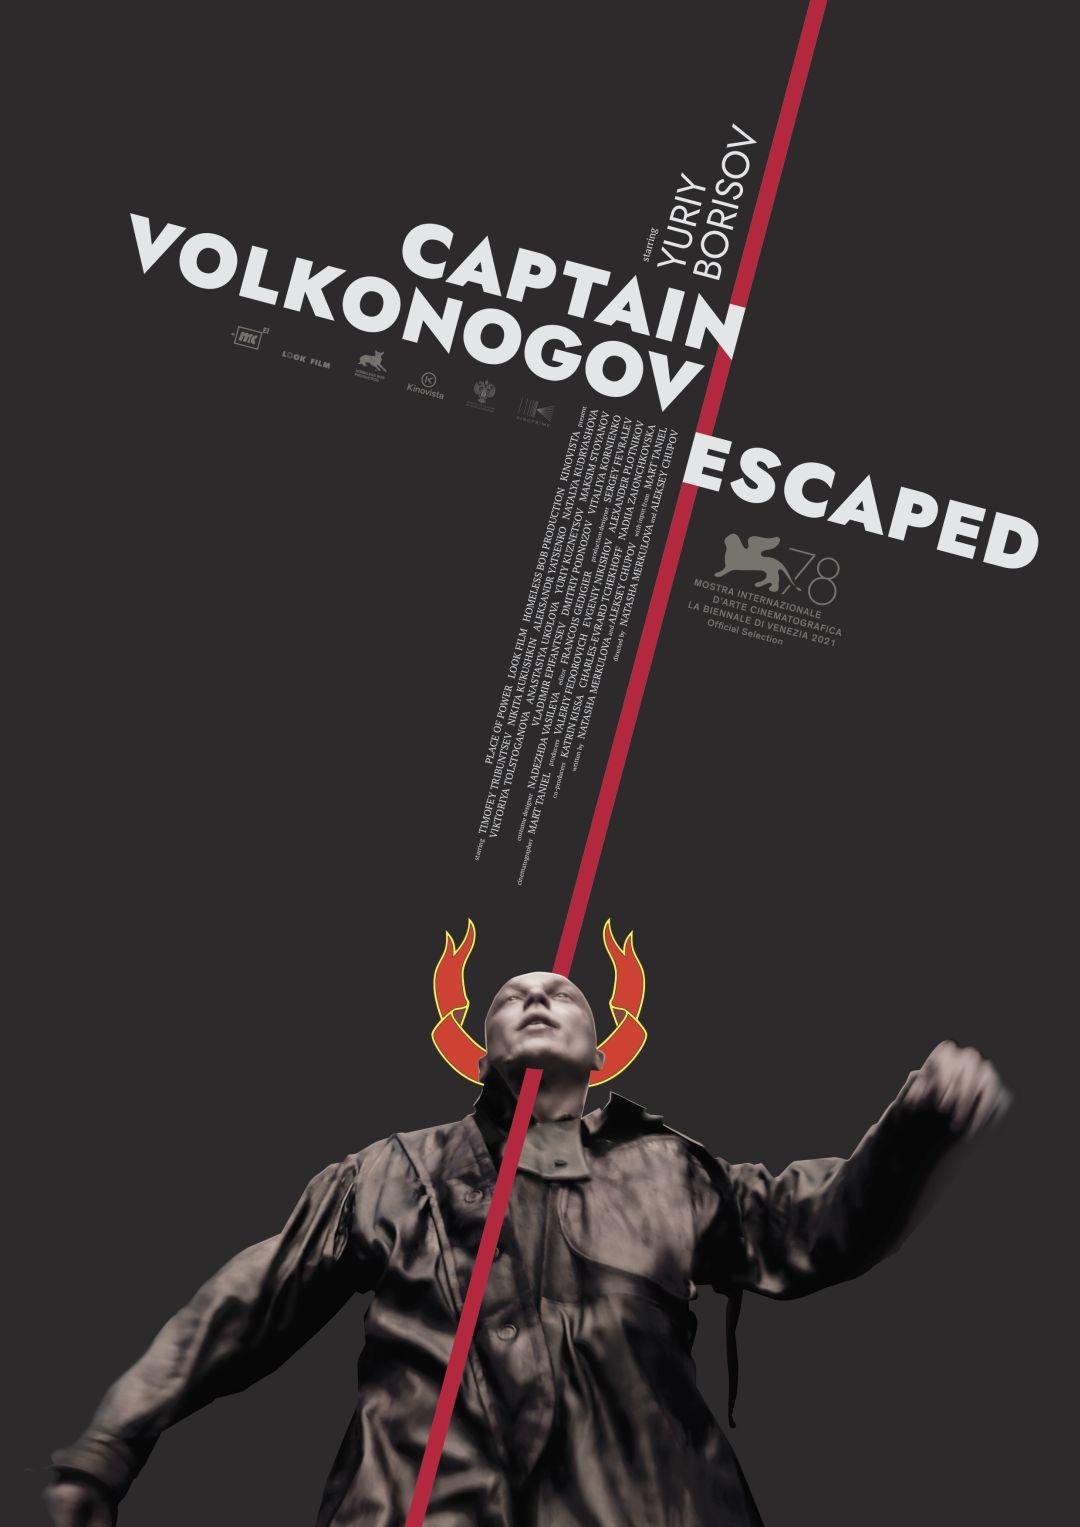 大尉叛逃記Captain Volkonogov Escaped